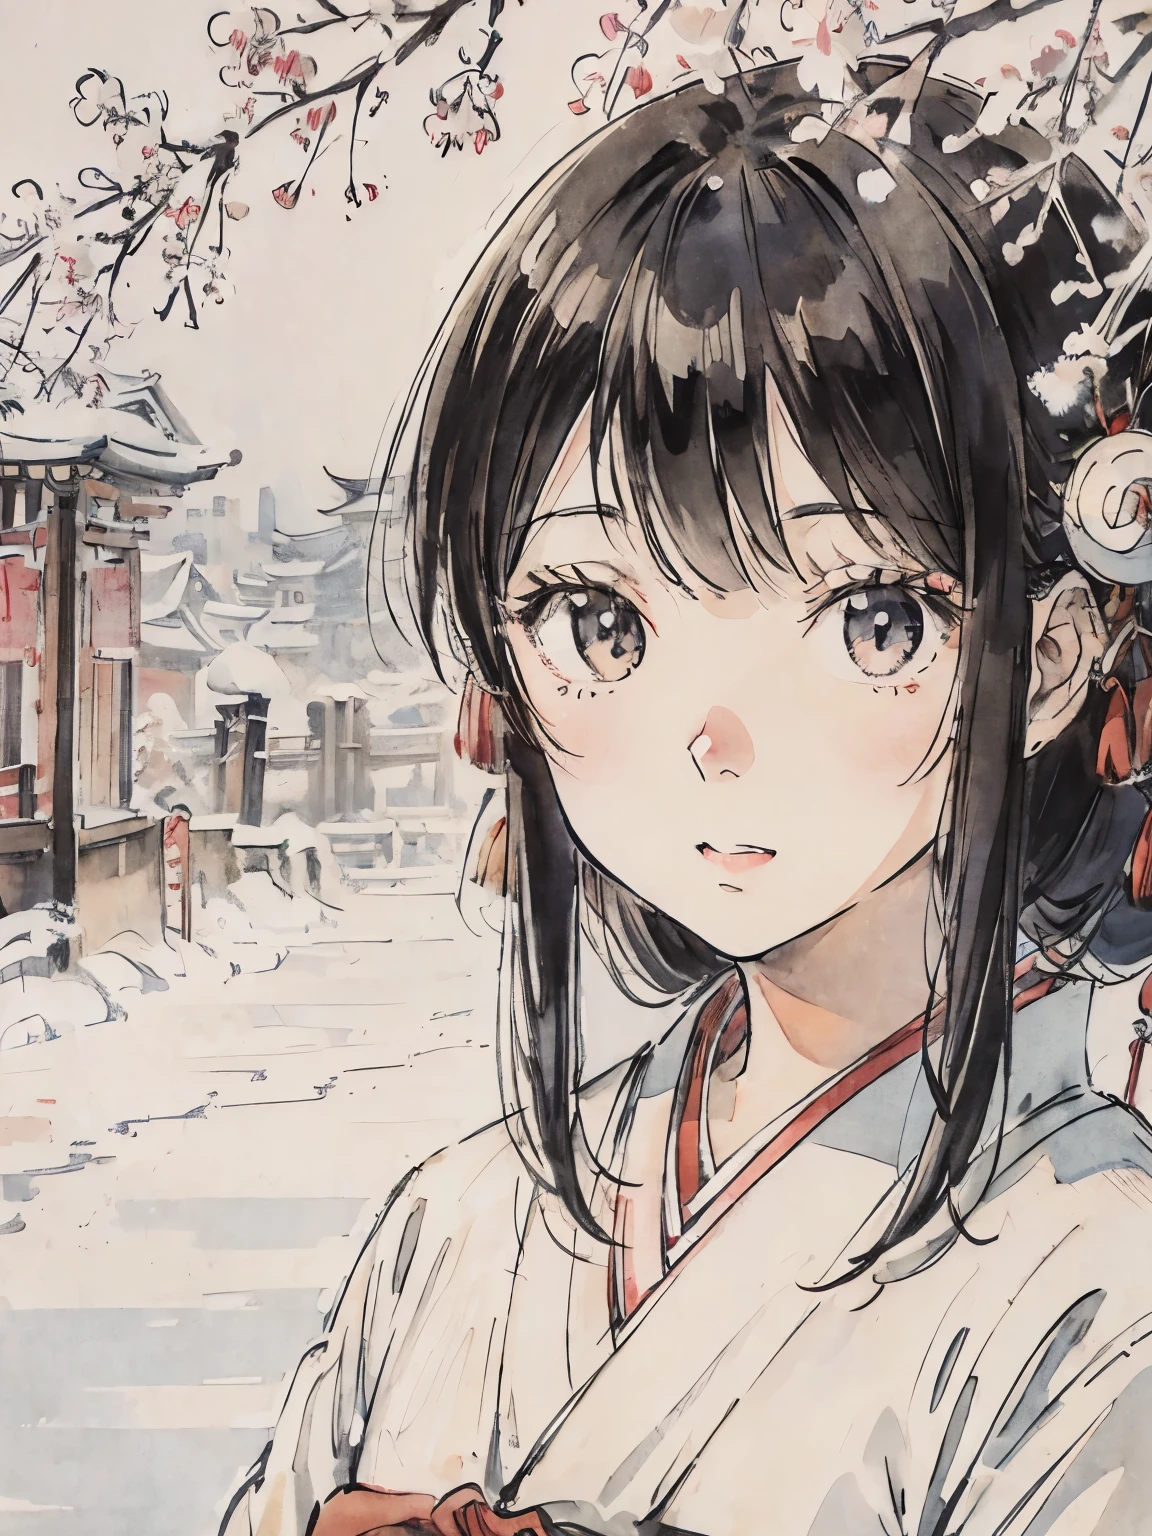 一個穿著和服的女孩在雪鄉、純白風景、淺草、黑髮、日式繪畫、京都市中心、臉部特寫